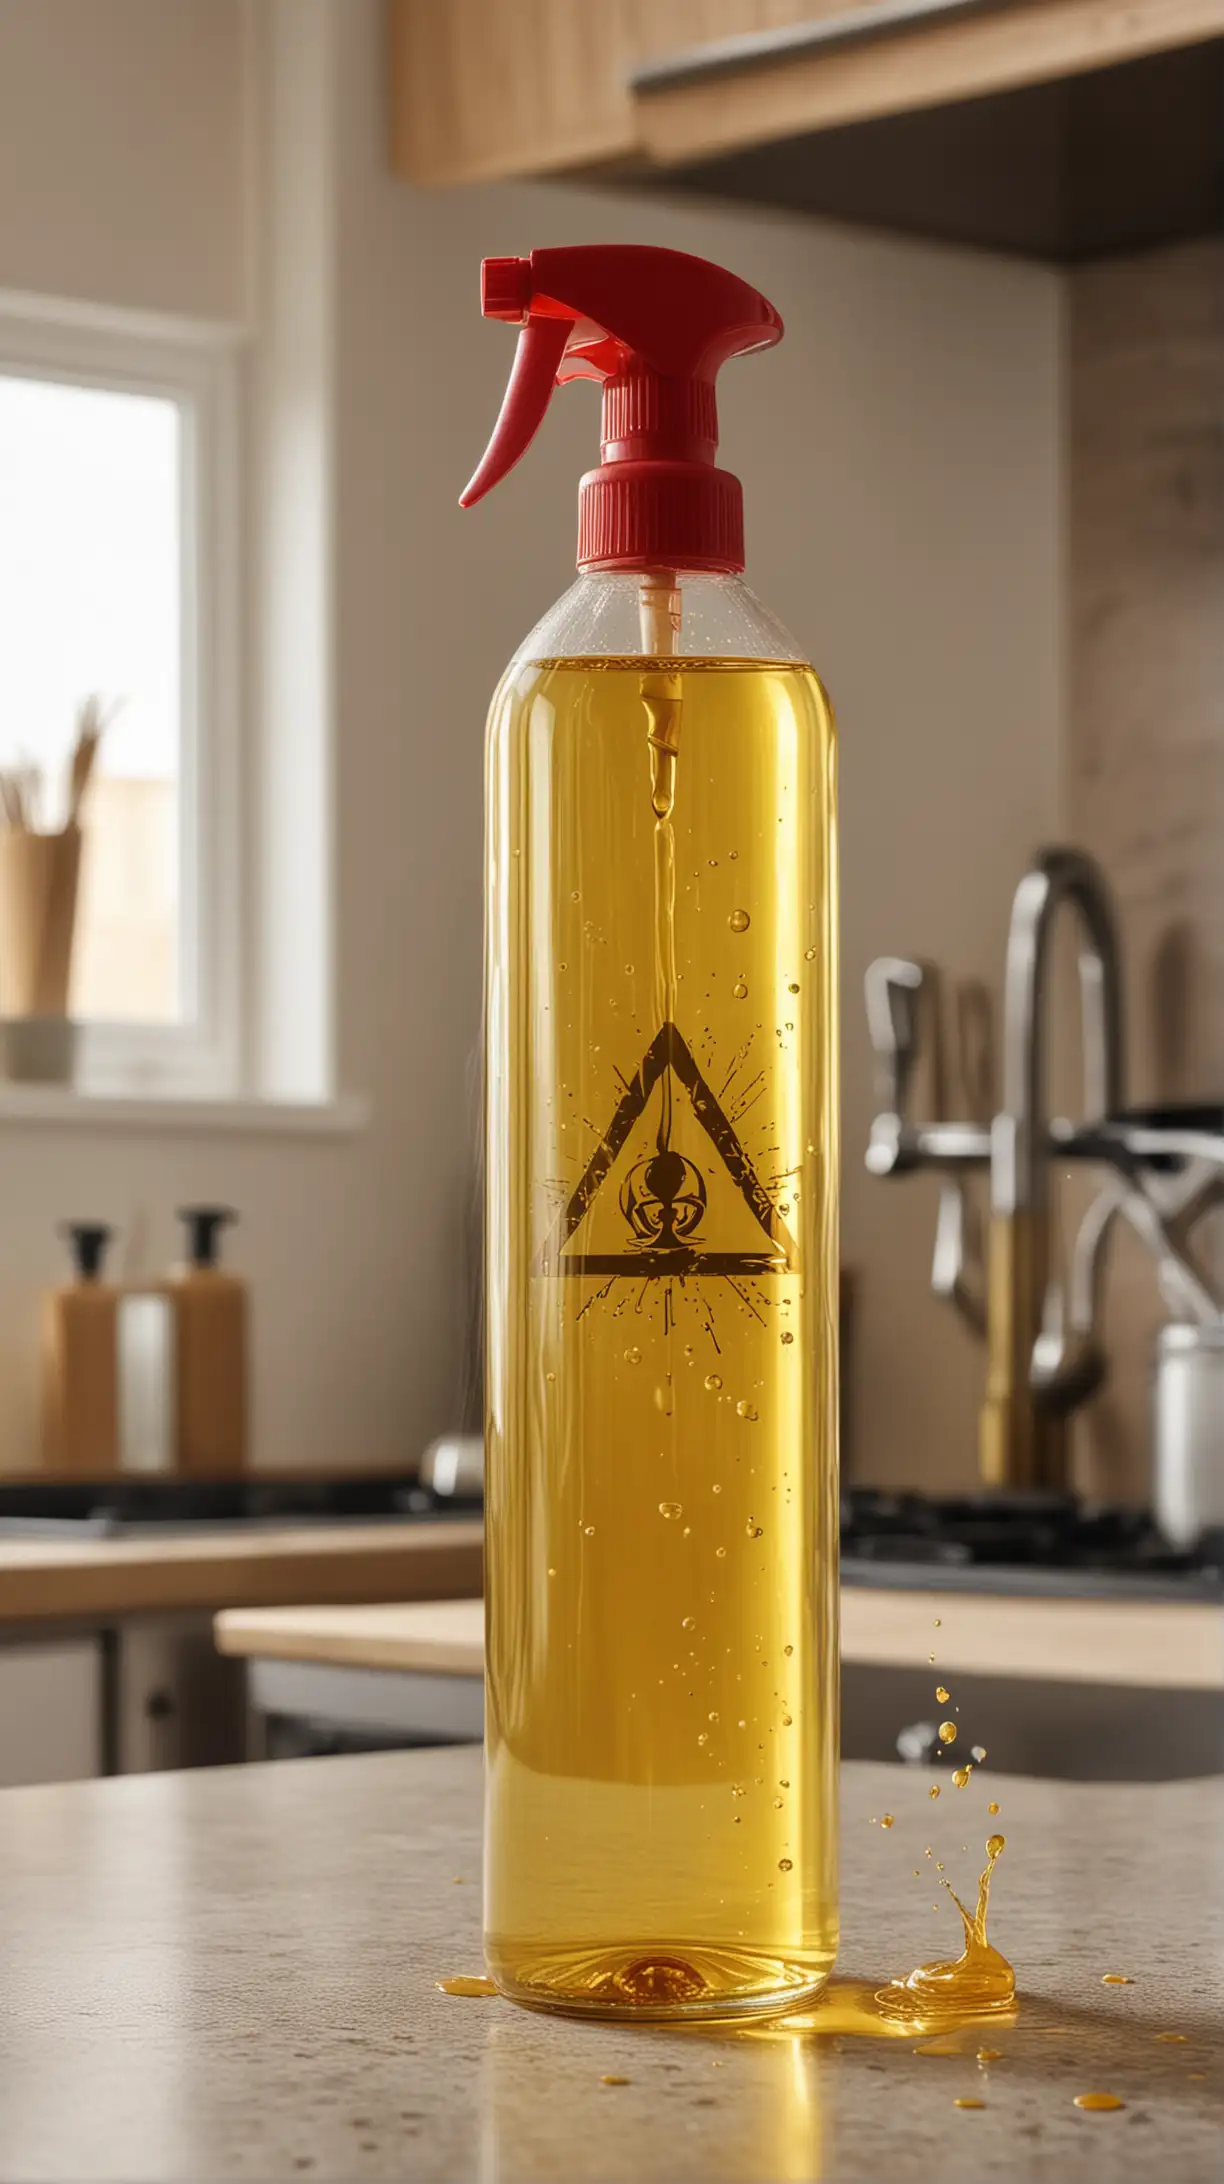 Kitchen Safety Cooking Oil Spray Bottle with Hazard Symbol